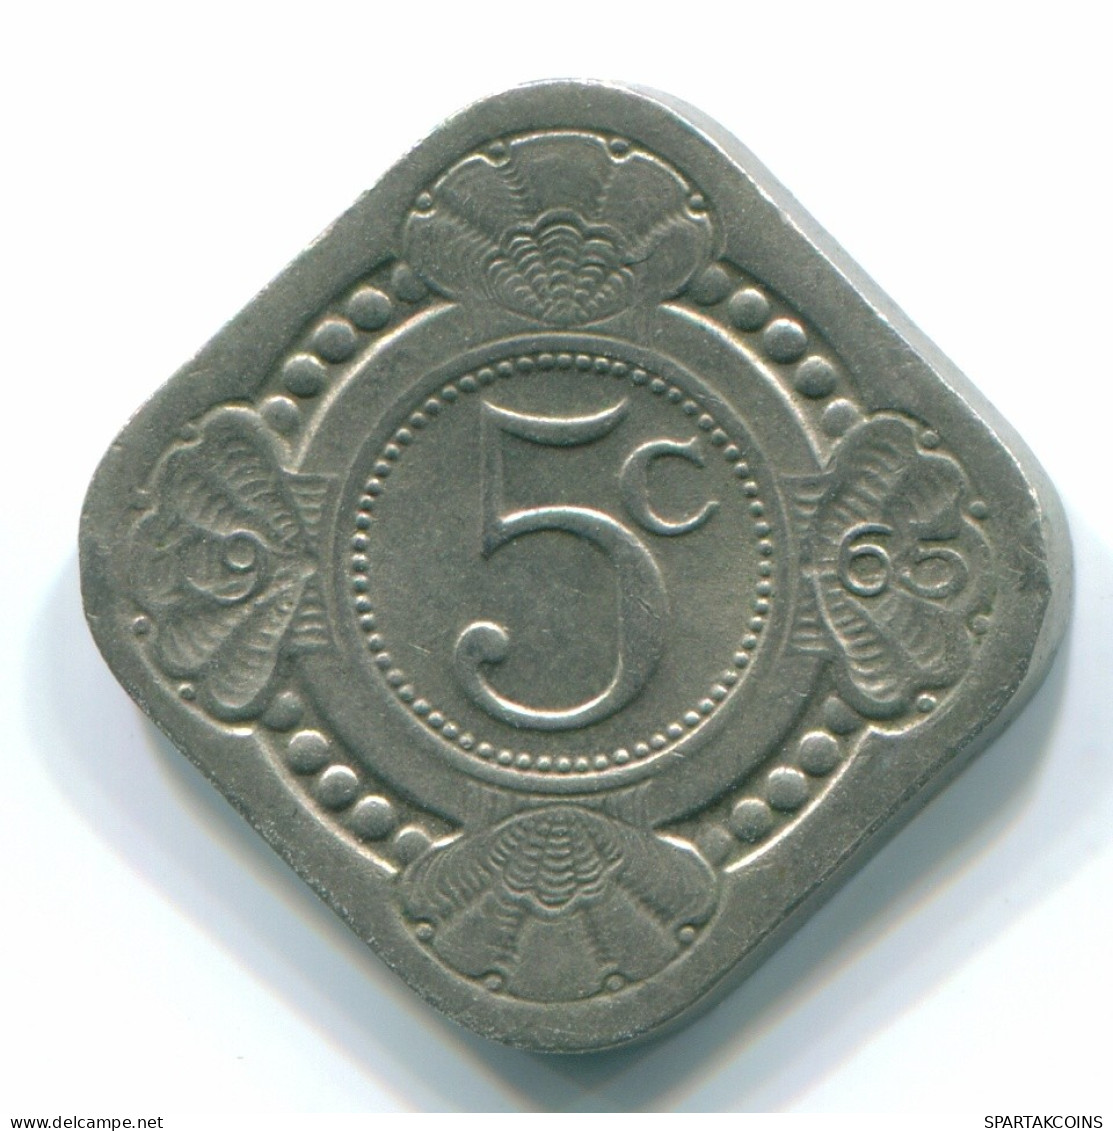 5 CENTS 1965 NETHERLANDS ANTILLES Nickel Colonial Coin #S12447.U.A - Niederländische Antillen